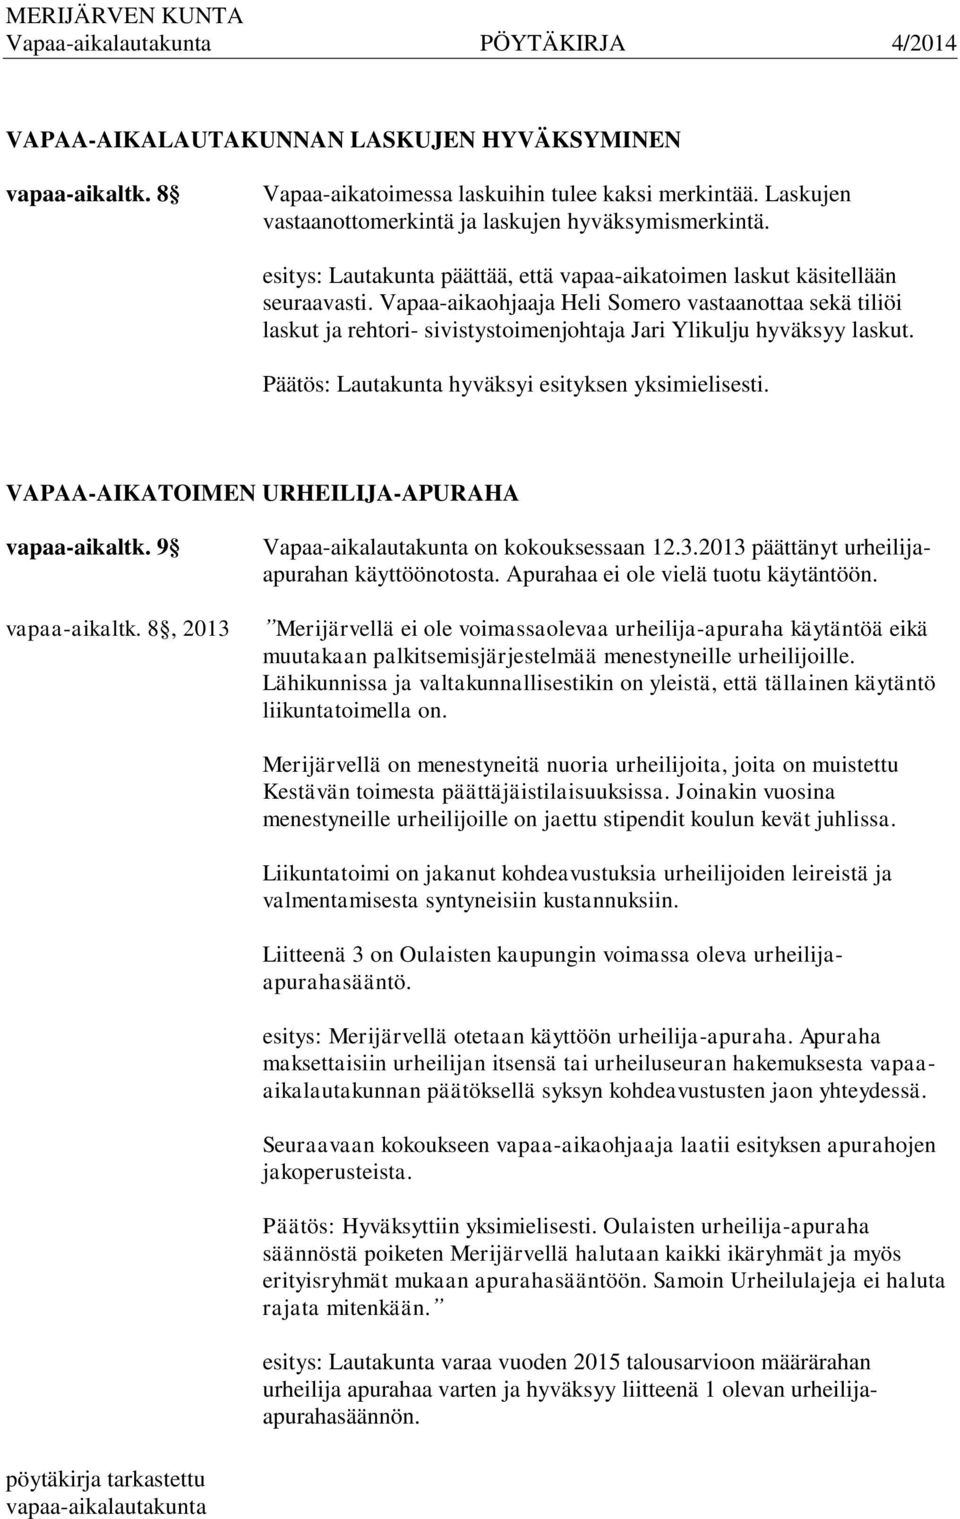 Vapaa-aikaohjaaja Heli Somero vastaanottaa sekä tiliöi laskut ja rehtori- sivistystoimenjohtaja Jari Ylikulju hyväksyy laskut. Päätös: Lautakunta hyväksyi esityksen yksimielisesti.